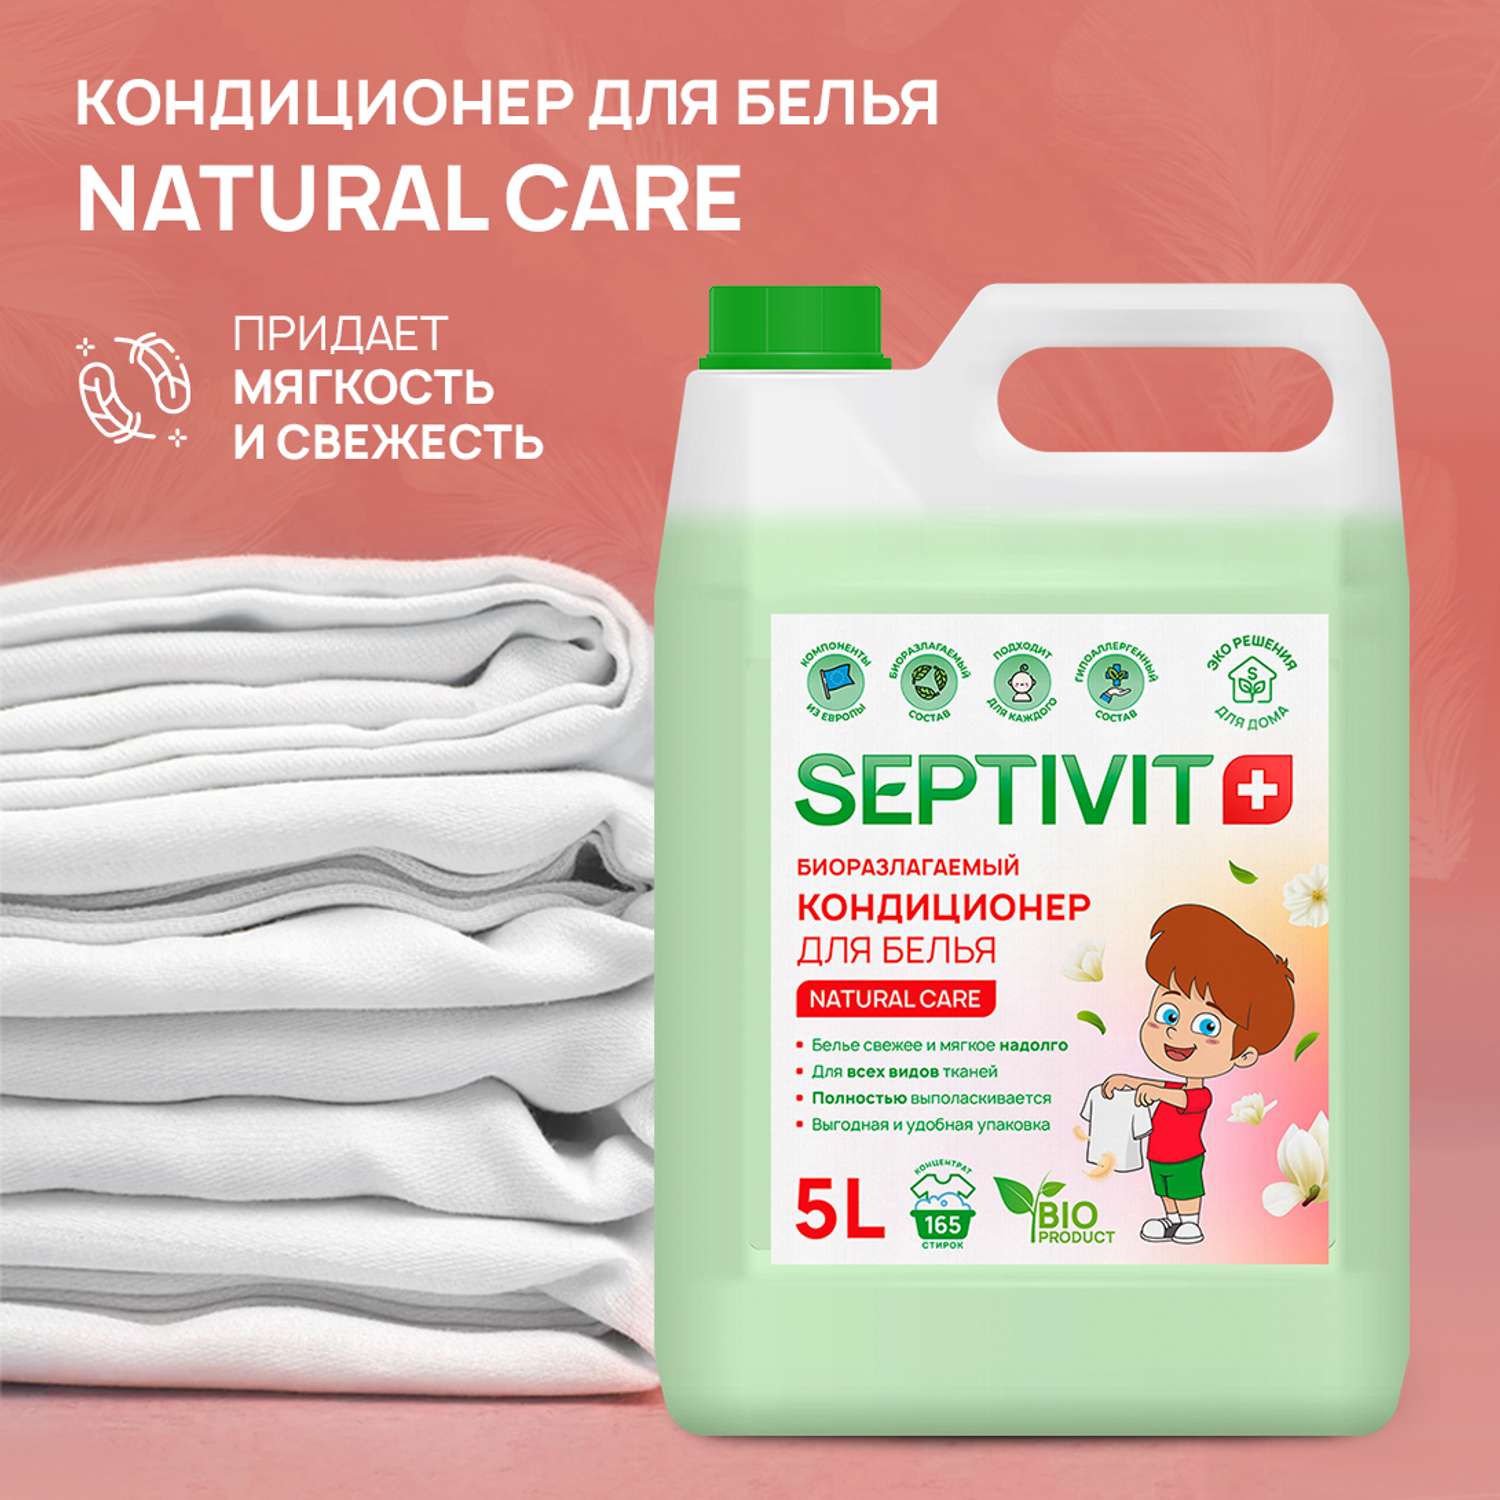 Кондиционер для белья SEPTIVIT Premium 5л с ароматом Natural care - фото 2